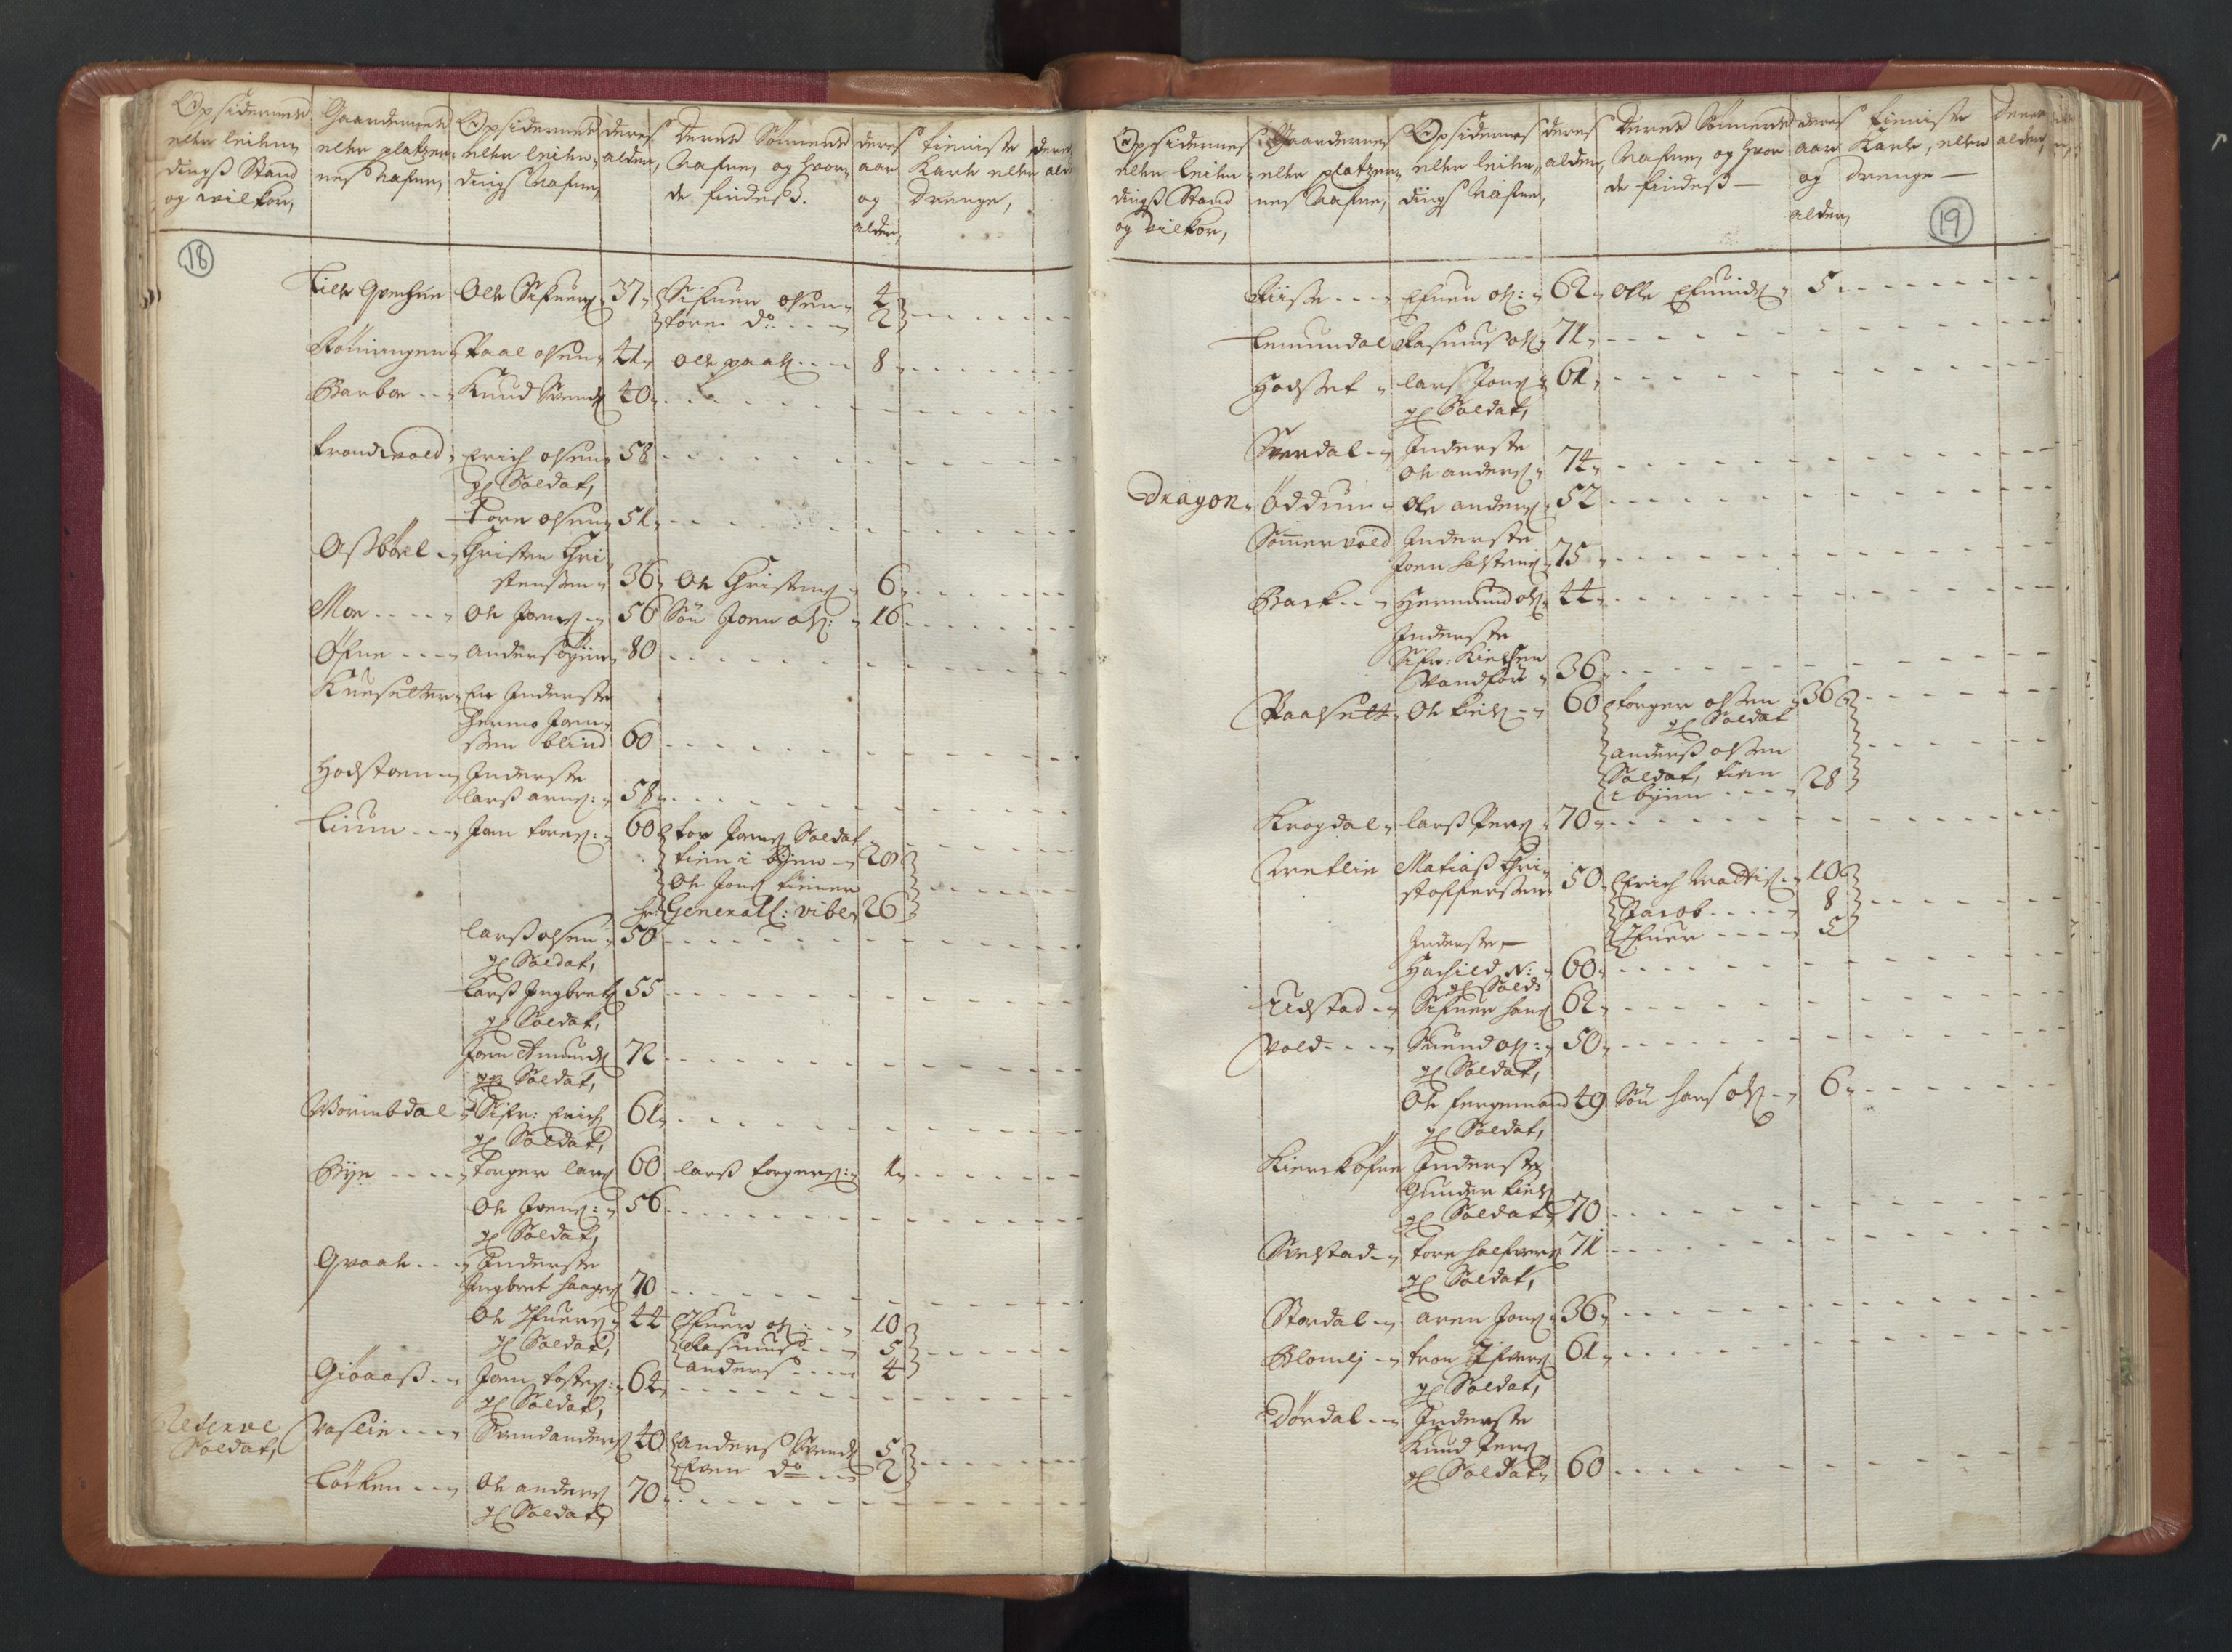 RA, Manntallet 1701, nr. 13: Orkdal fogderi og Gauldal fogderi med Røros kobberverk, 1701, s. 18-19